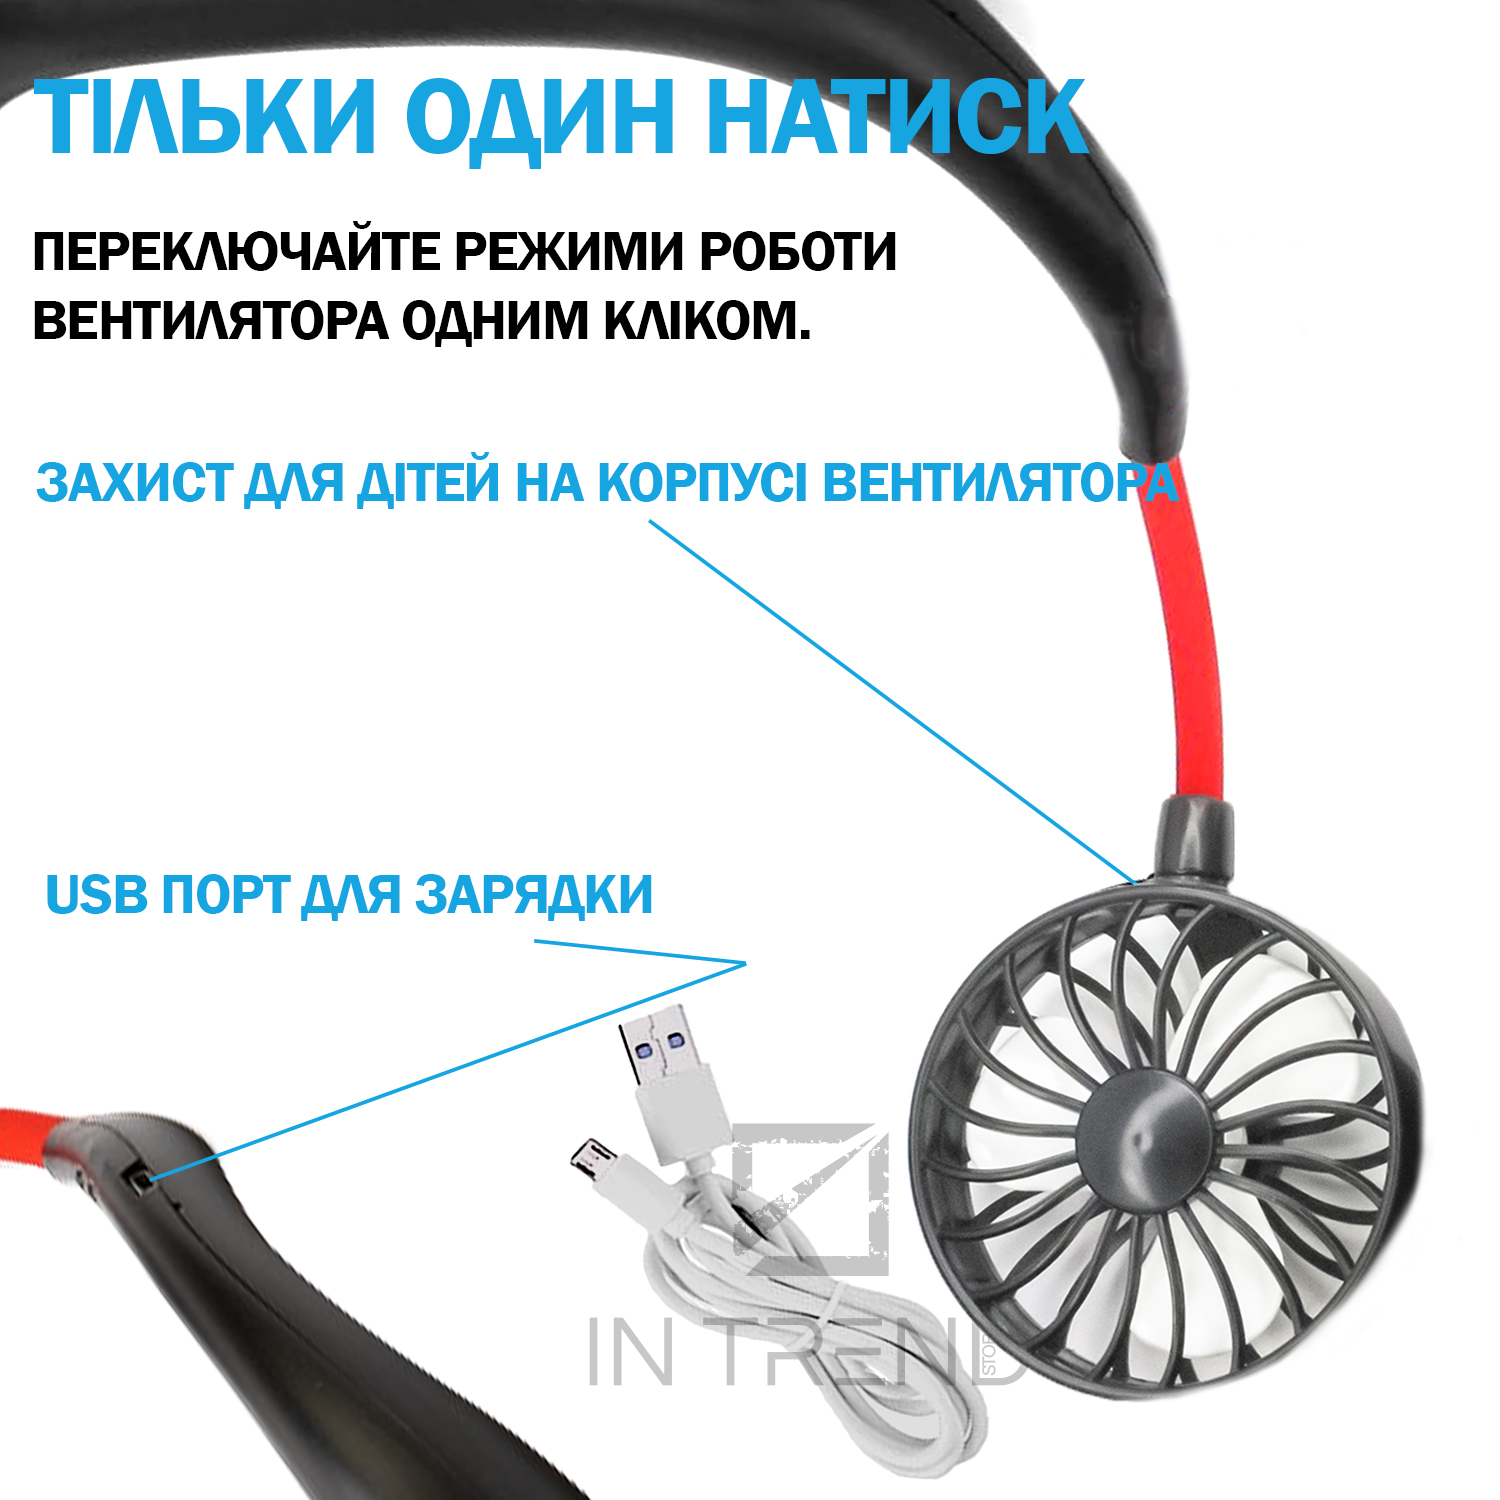 Как сделать USB вентилятор своими руками в домашних условиях - How to make a USB ventilator